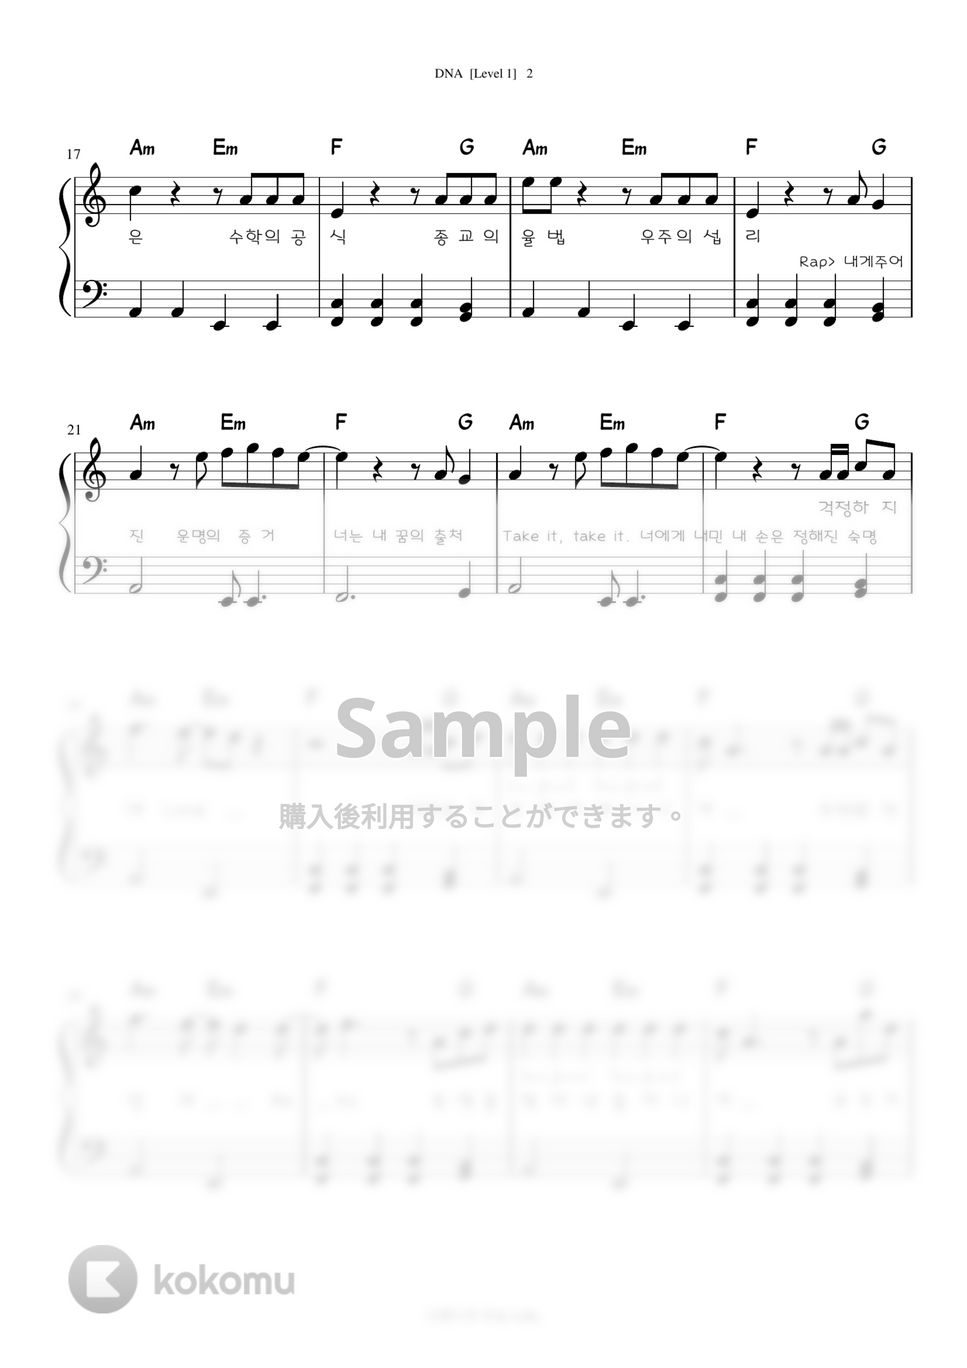 防弾少年団(BTS) - DNA (Level 1 -Very Easy) by A.Ha